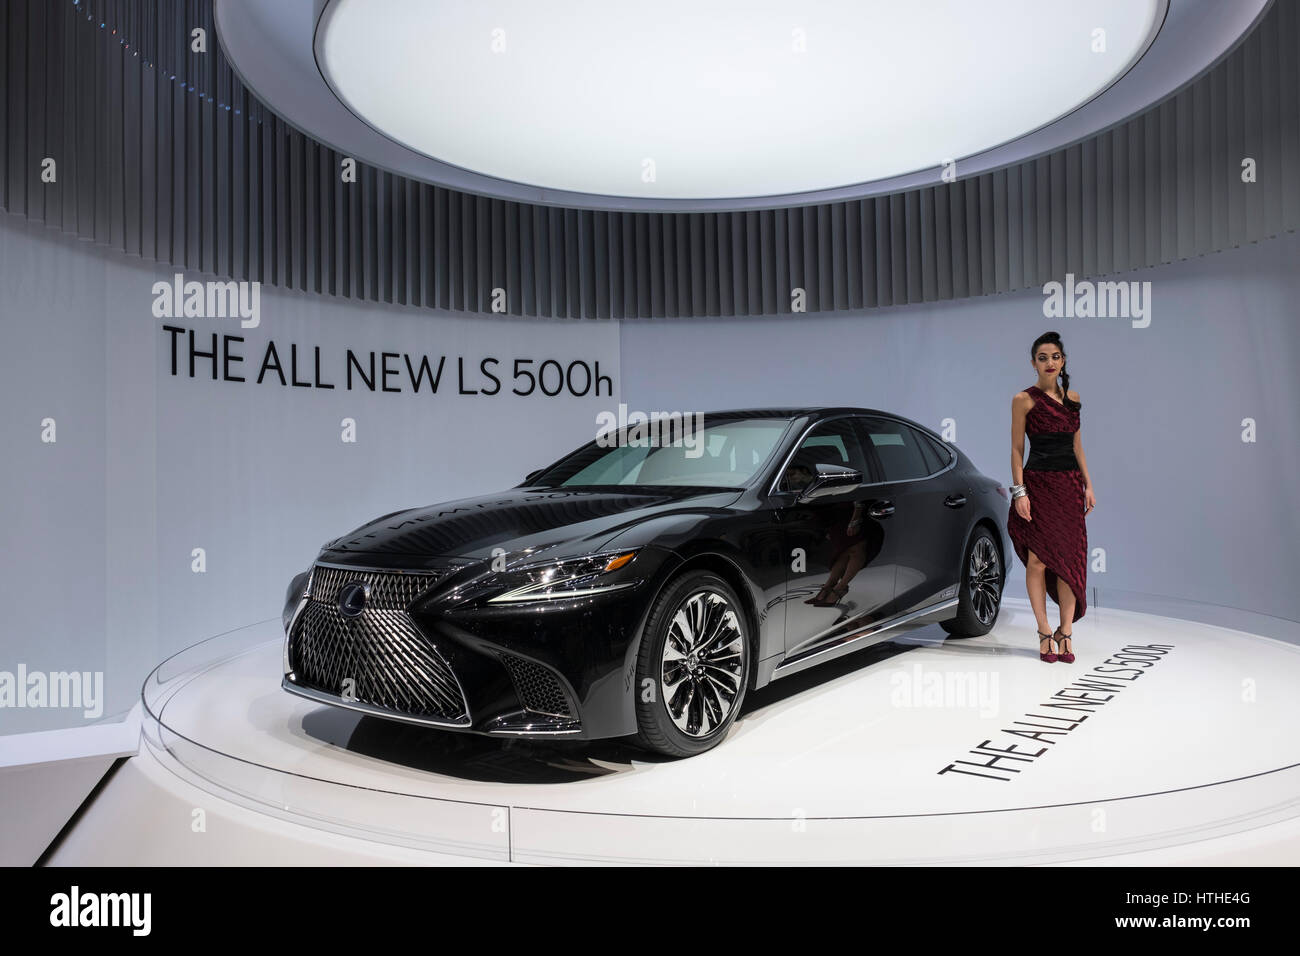 Nouvelle Lexus LS 500h hybride salon de voiture électrique au 87e Salon International de l'Automobile à Genève Suisse 2017 Banque D'Images